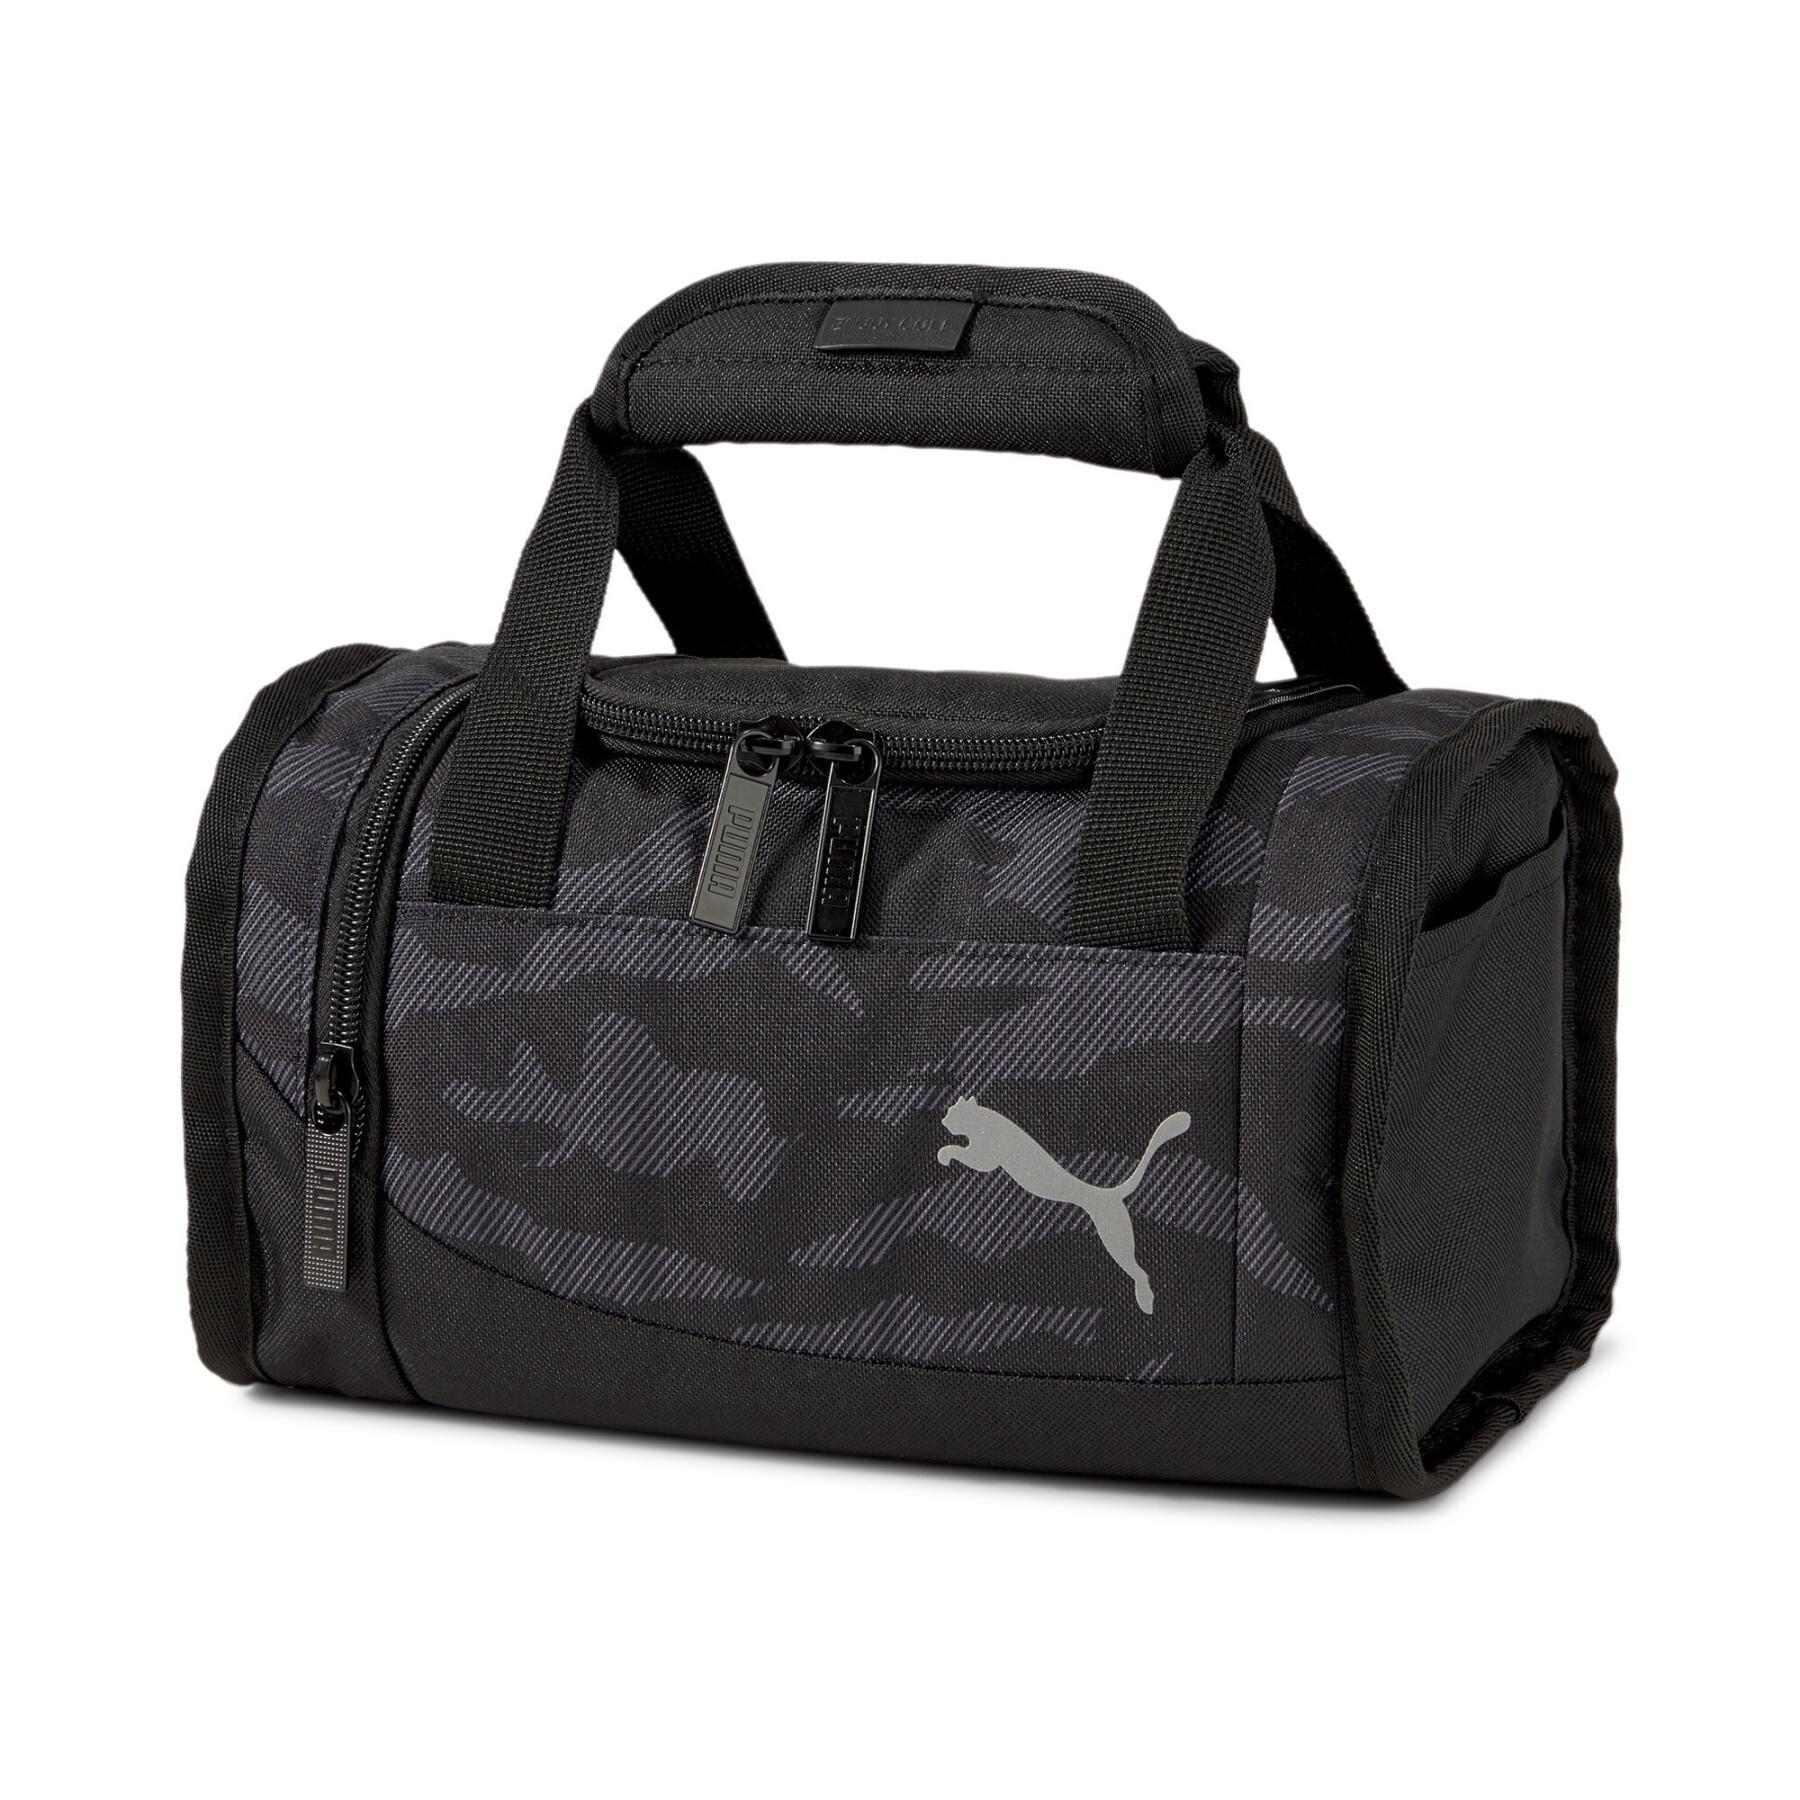 Sports bag Puma Cooler